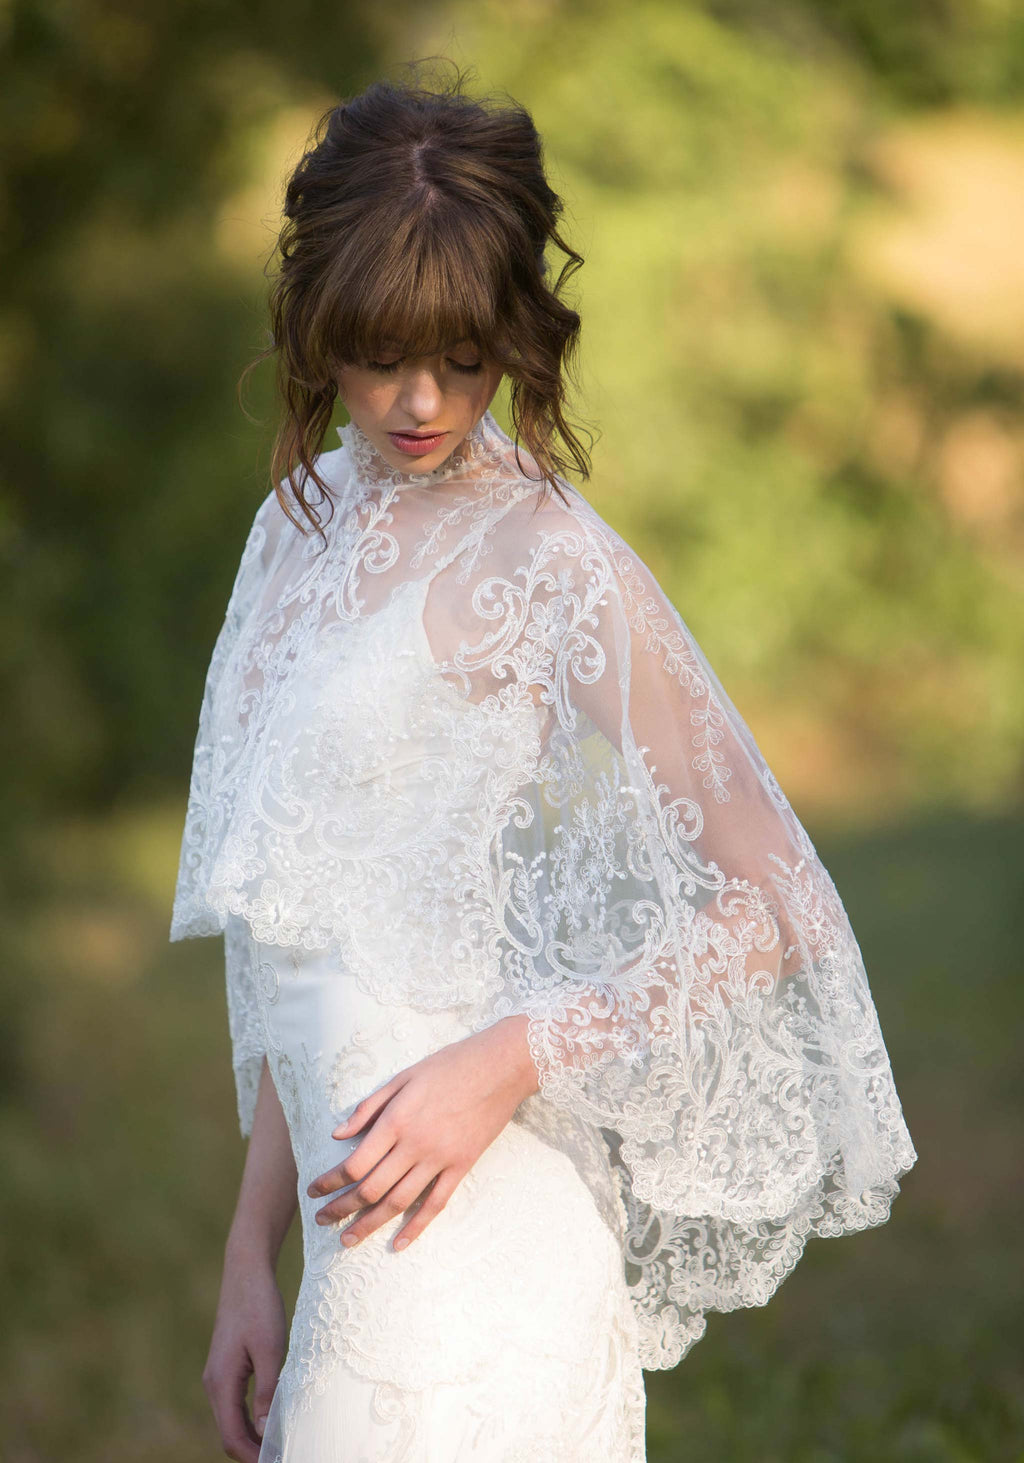 【ウェディン】 Wedding Cape Lace Bridal Capelet Bolero Cover Up Lace Shawl ...